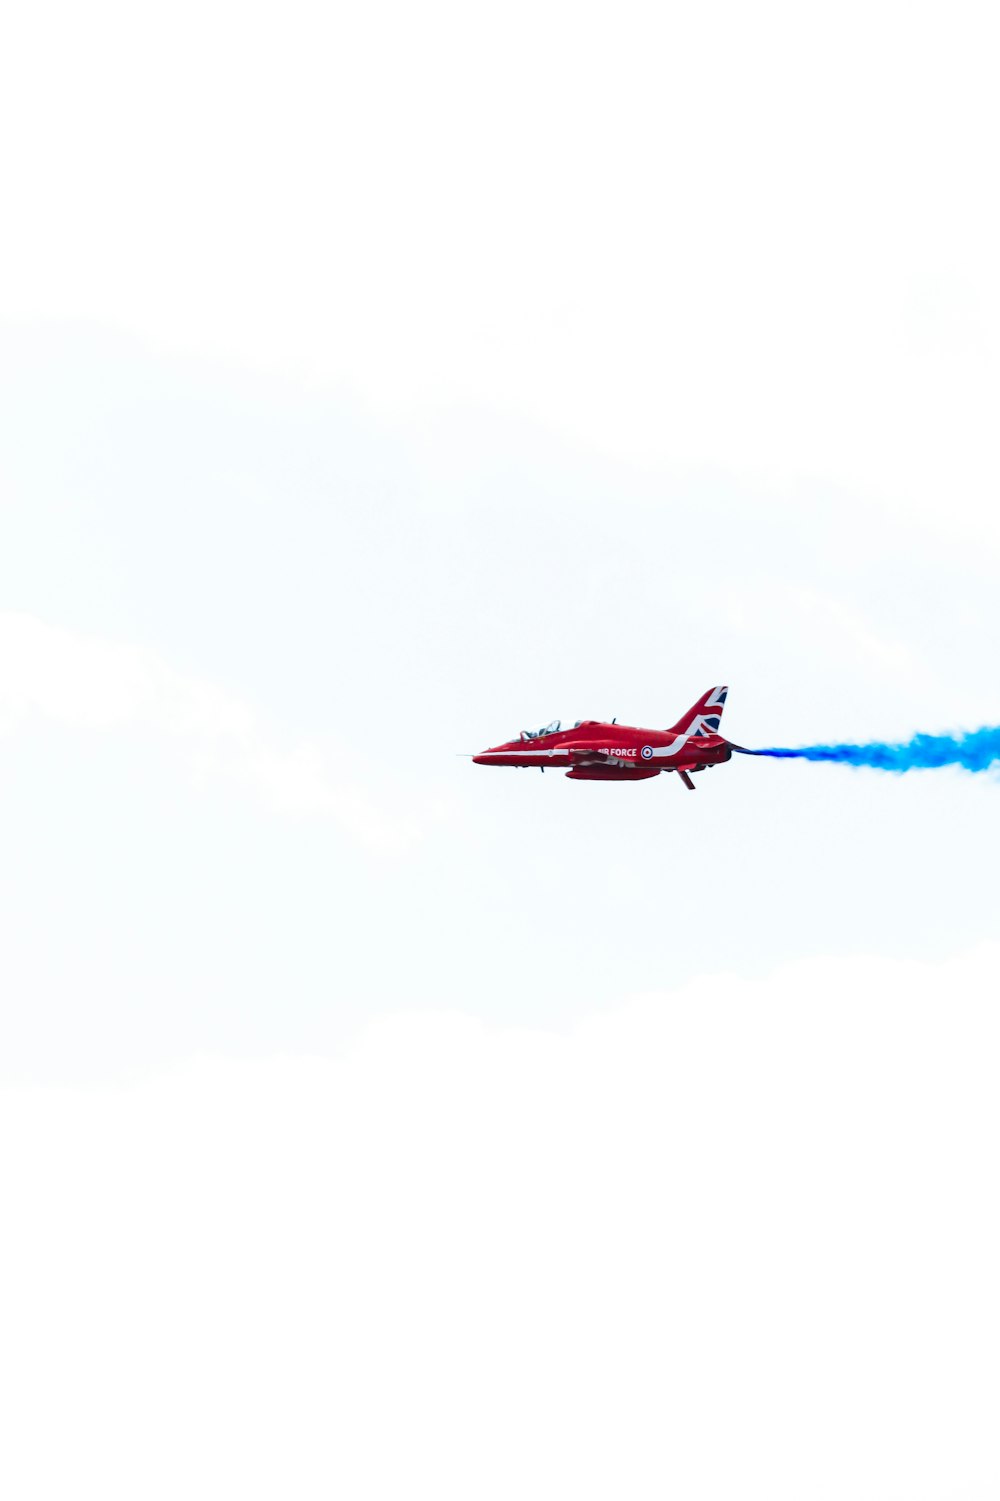 Un avion rouge avec de la fumée bleue